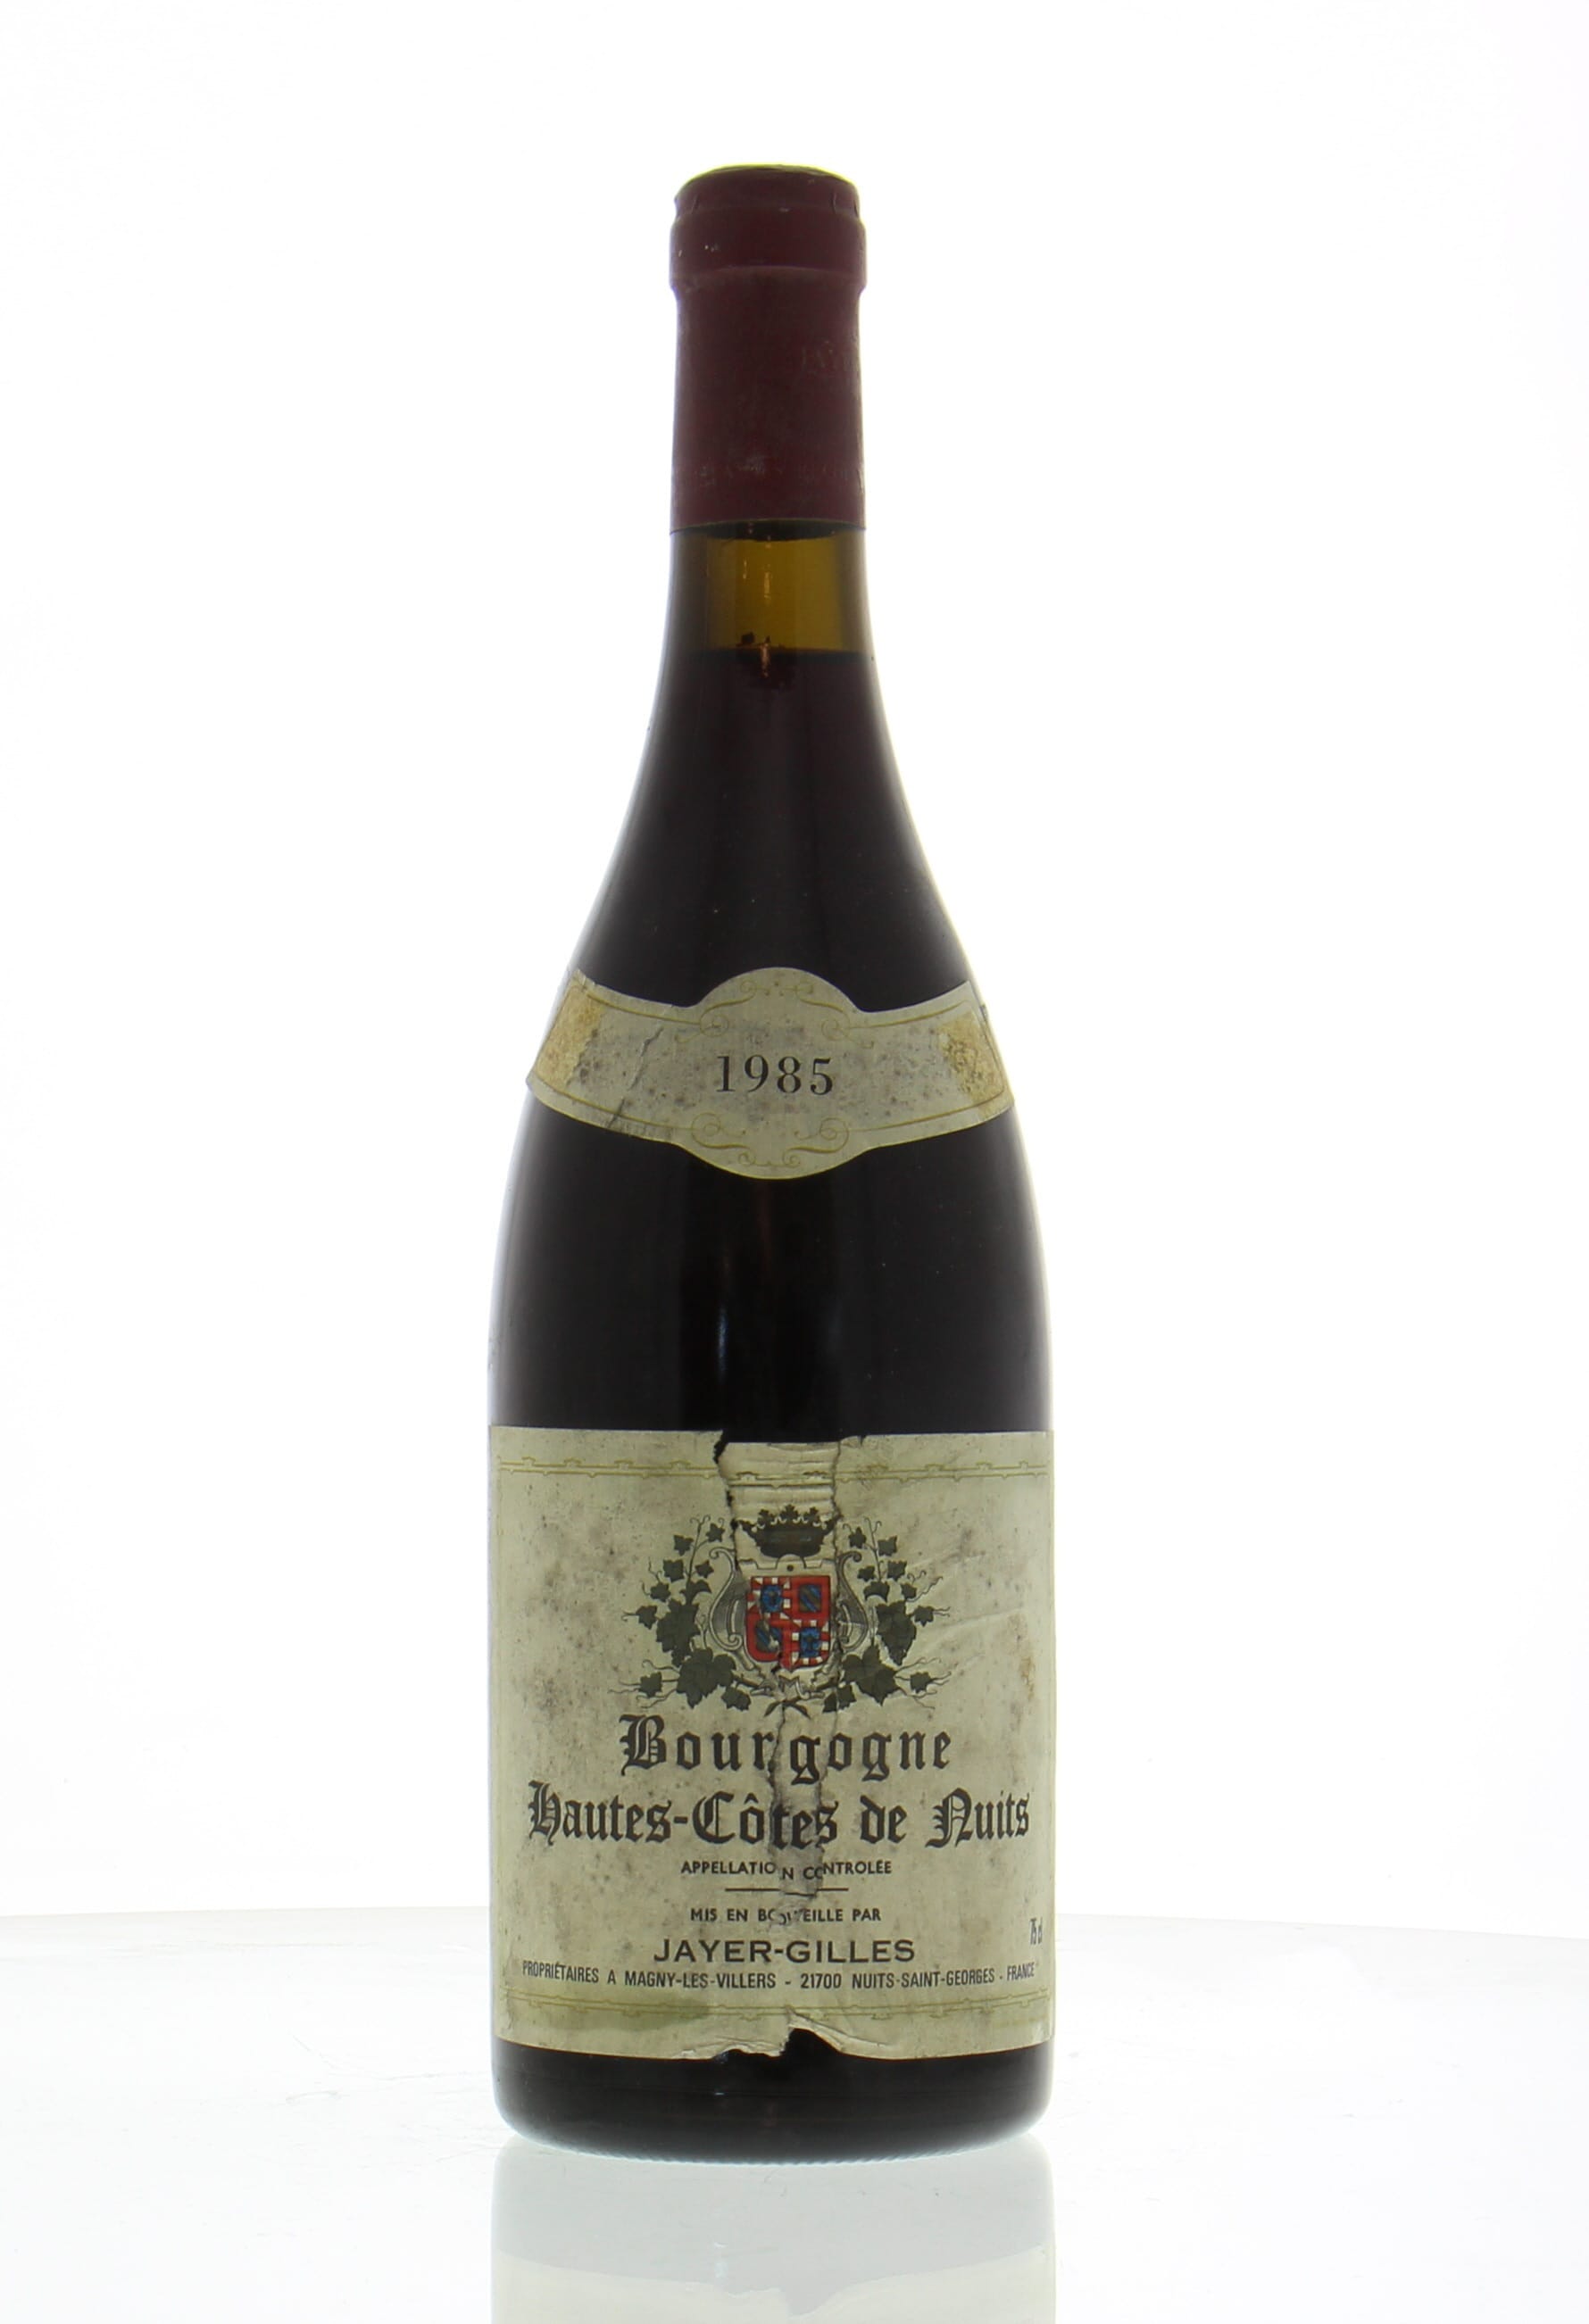 Domaine Jayer-Gilles - Bourgogne Haut Cotes de Nuits 1985 Perfect